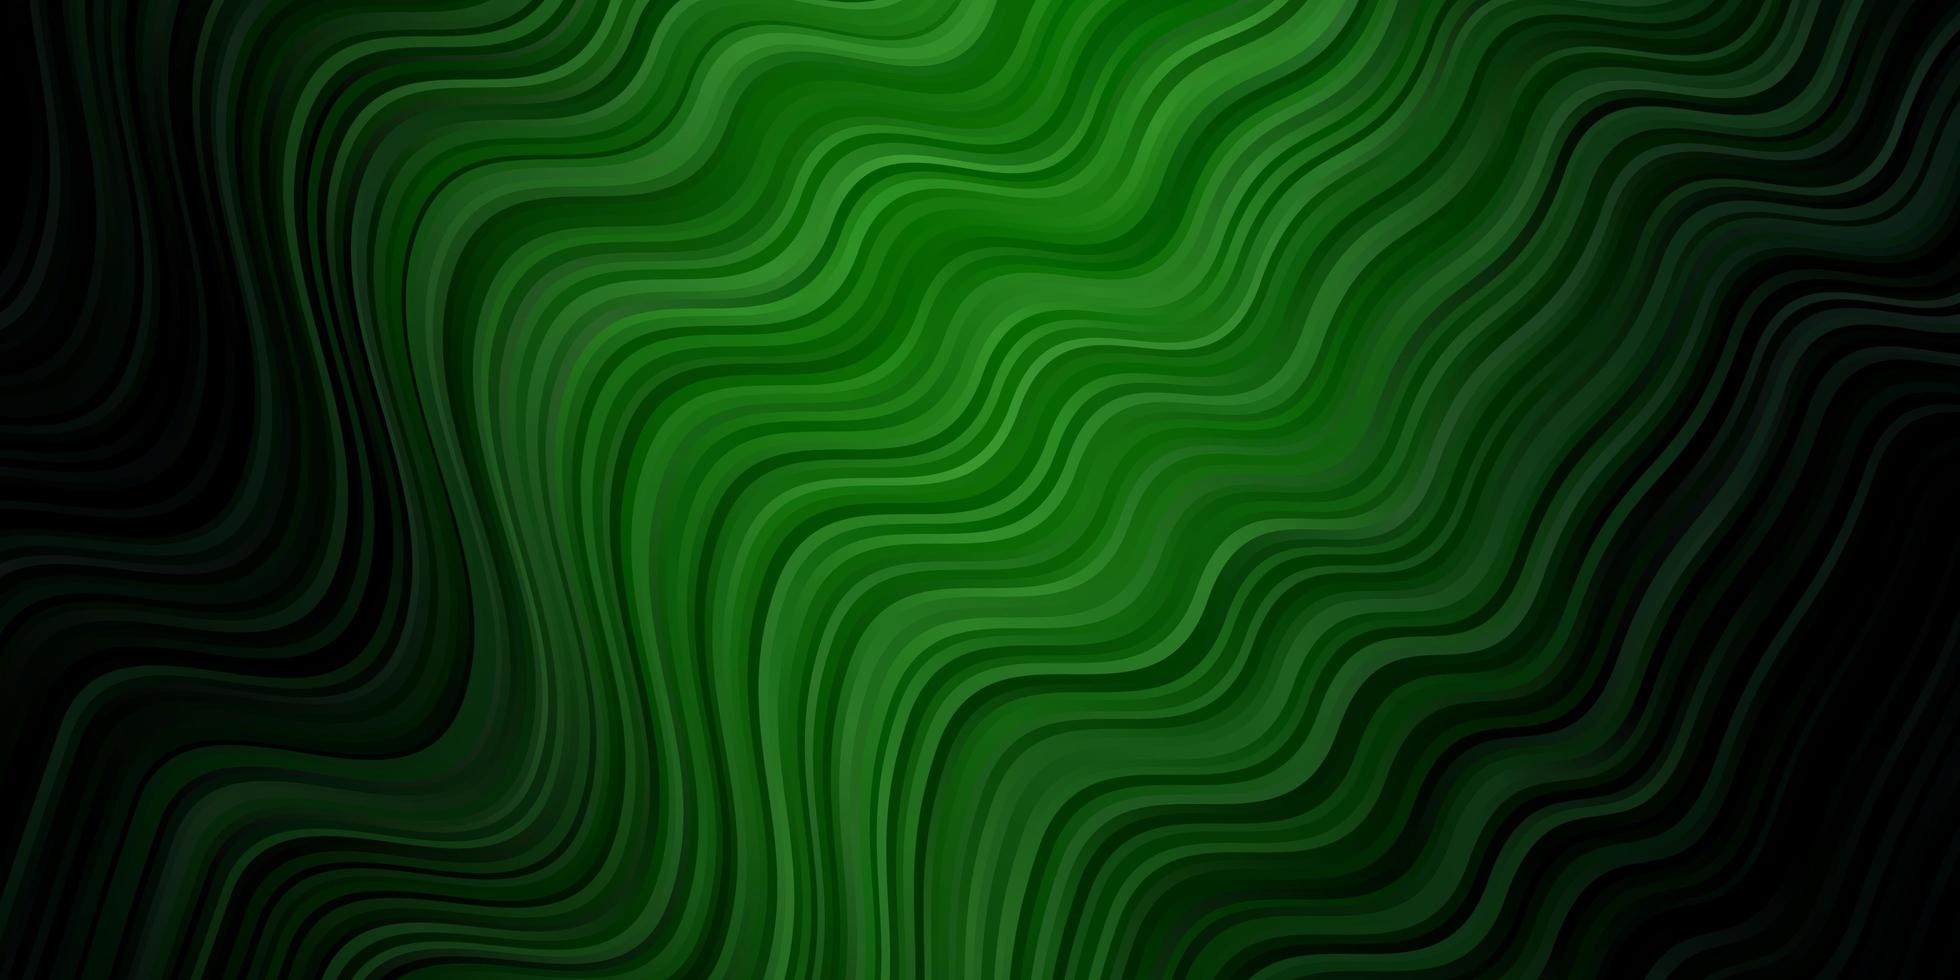 Dark Green vector backdrop with bent lines.